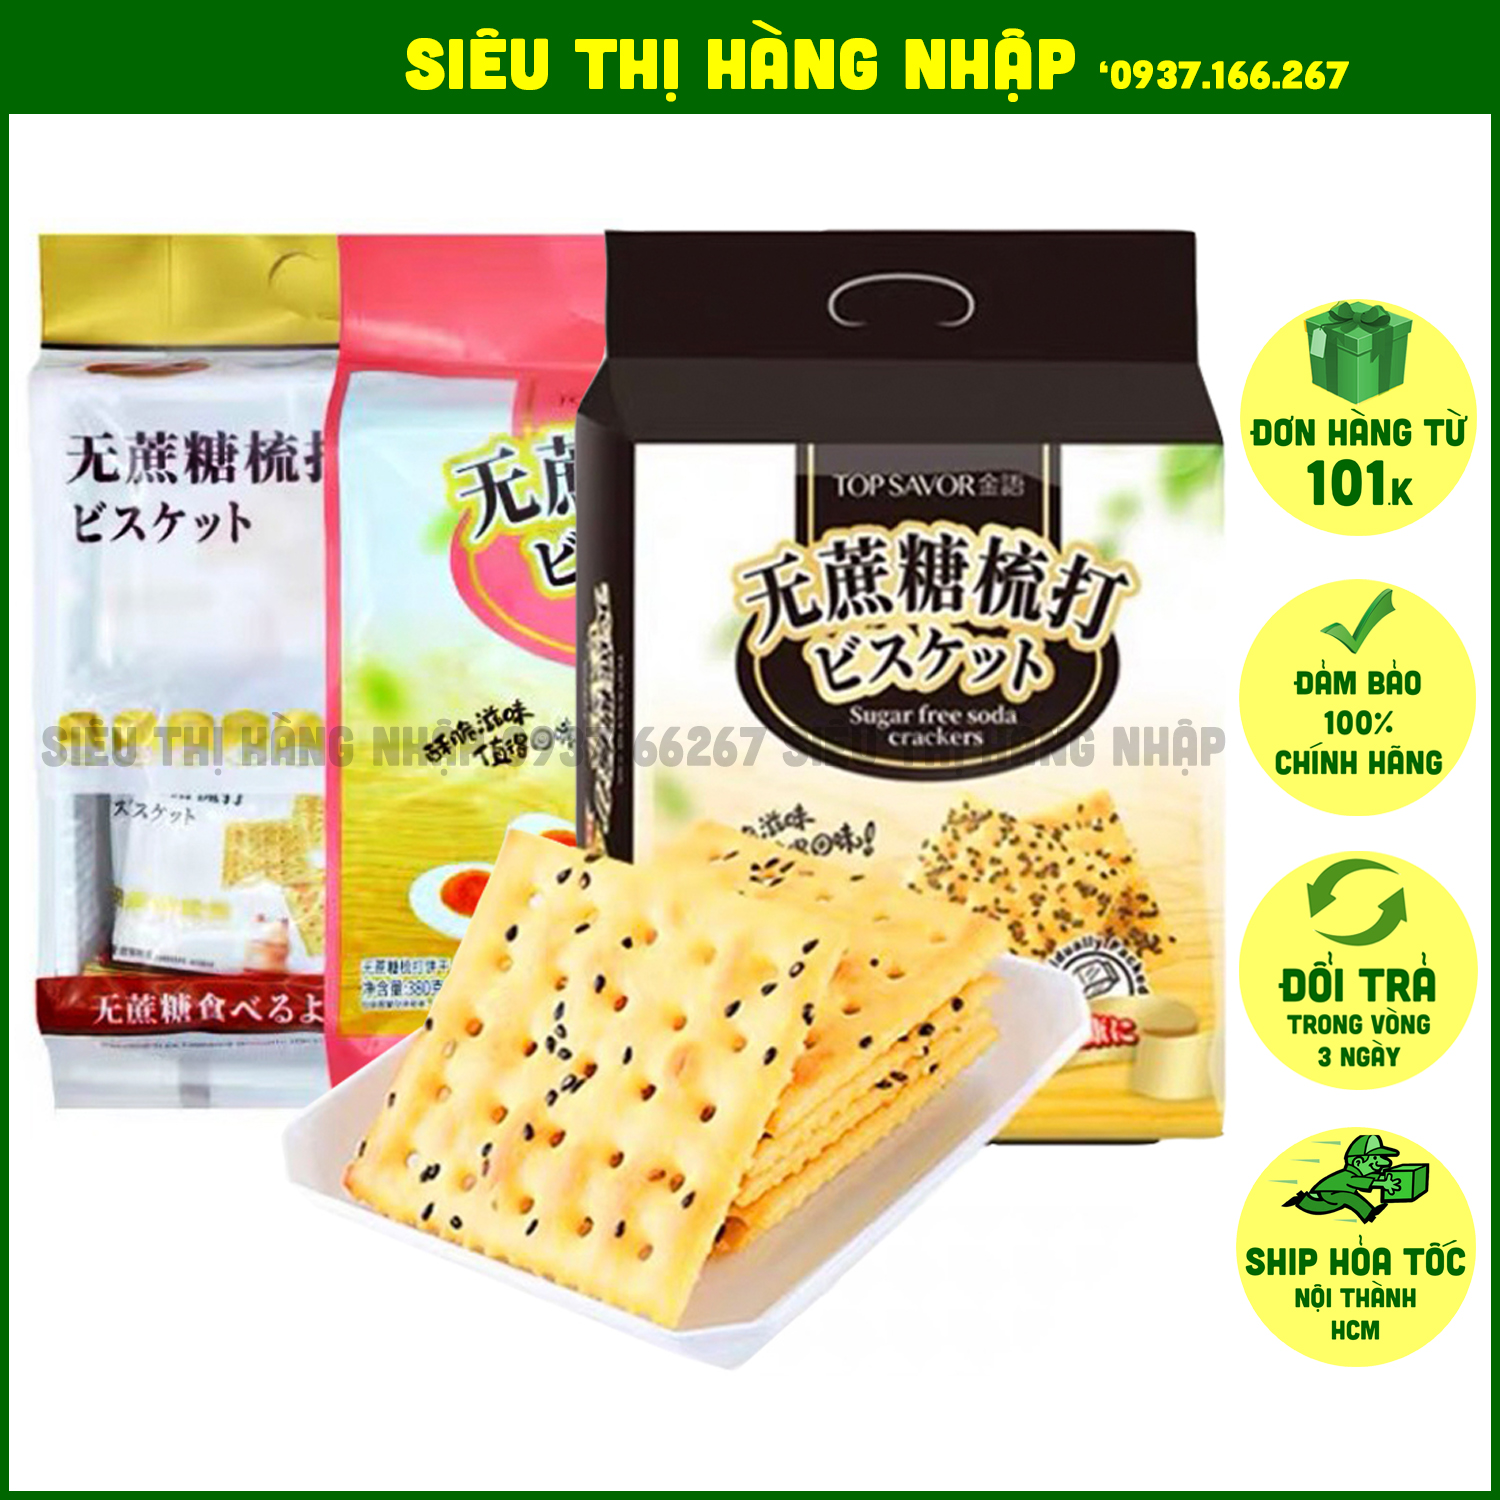 Bánh quy lạt không đường mè đen sữa chua trứng muối Top Savor Đài Loan